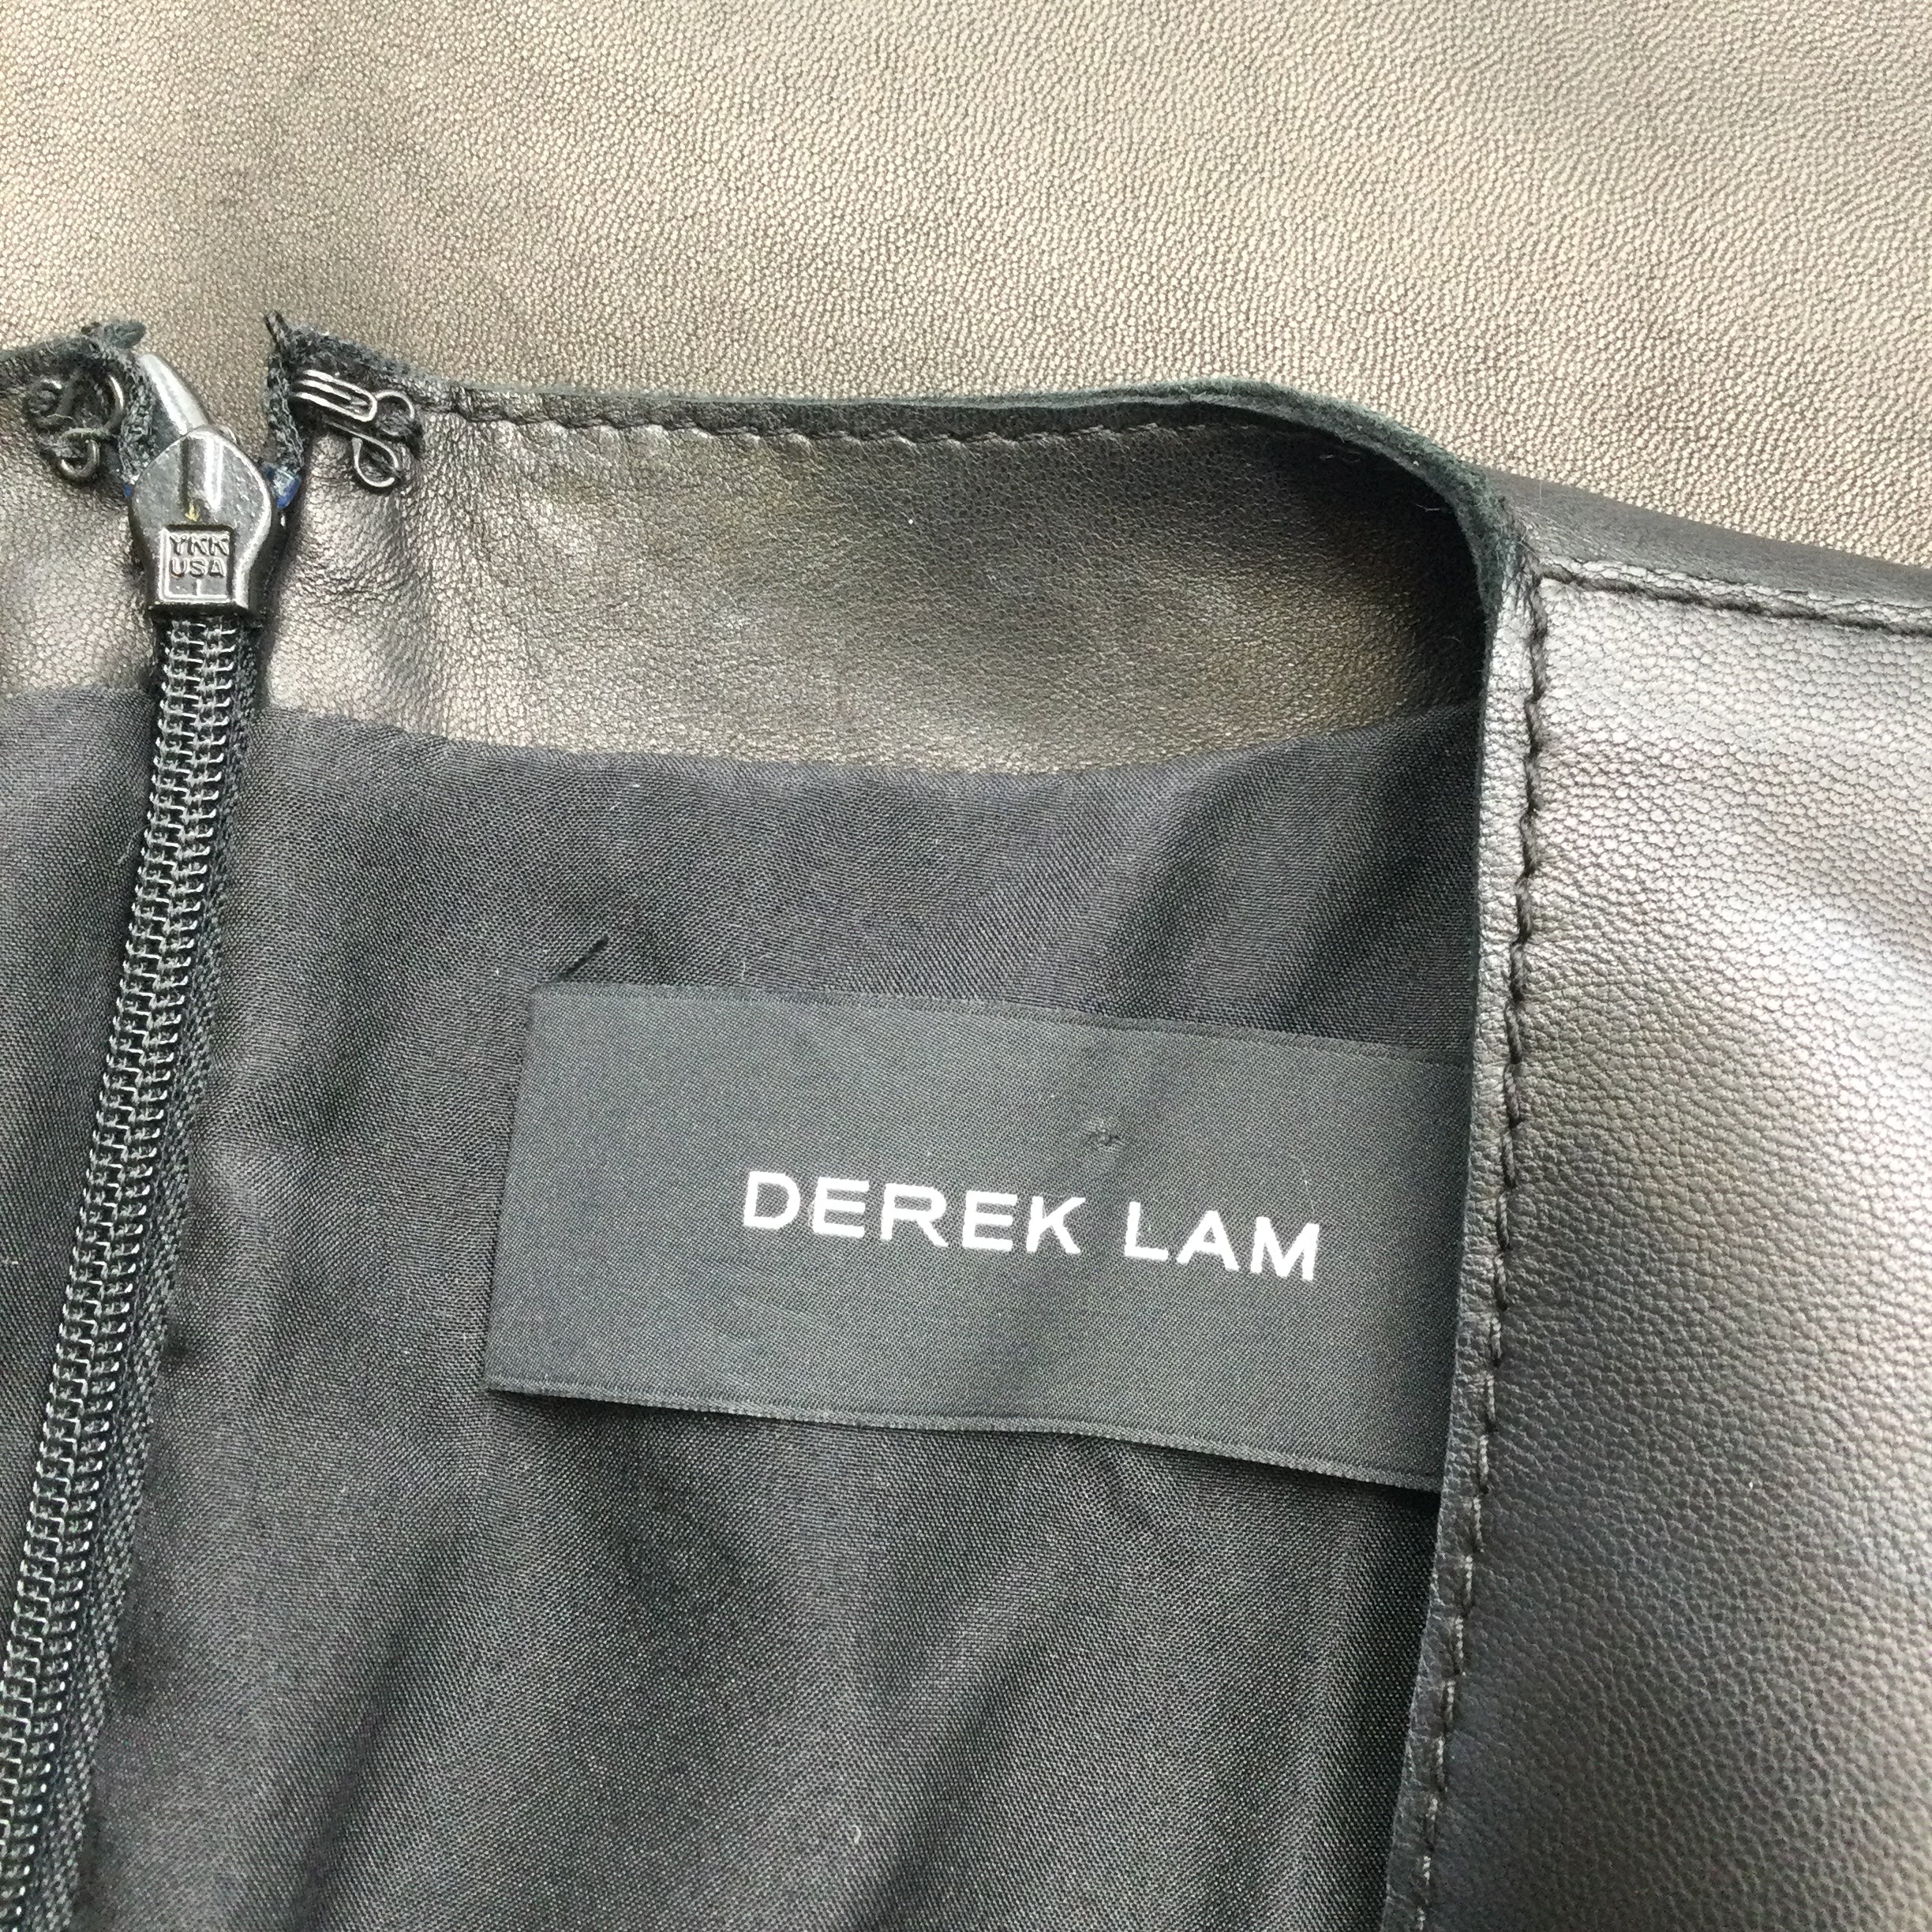 Derek Lam Black Sleeveless Leather Blouse